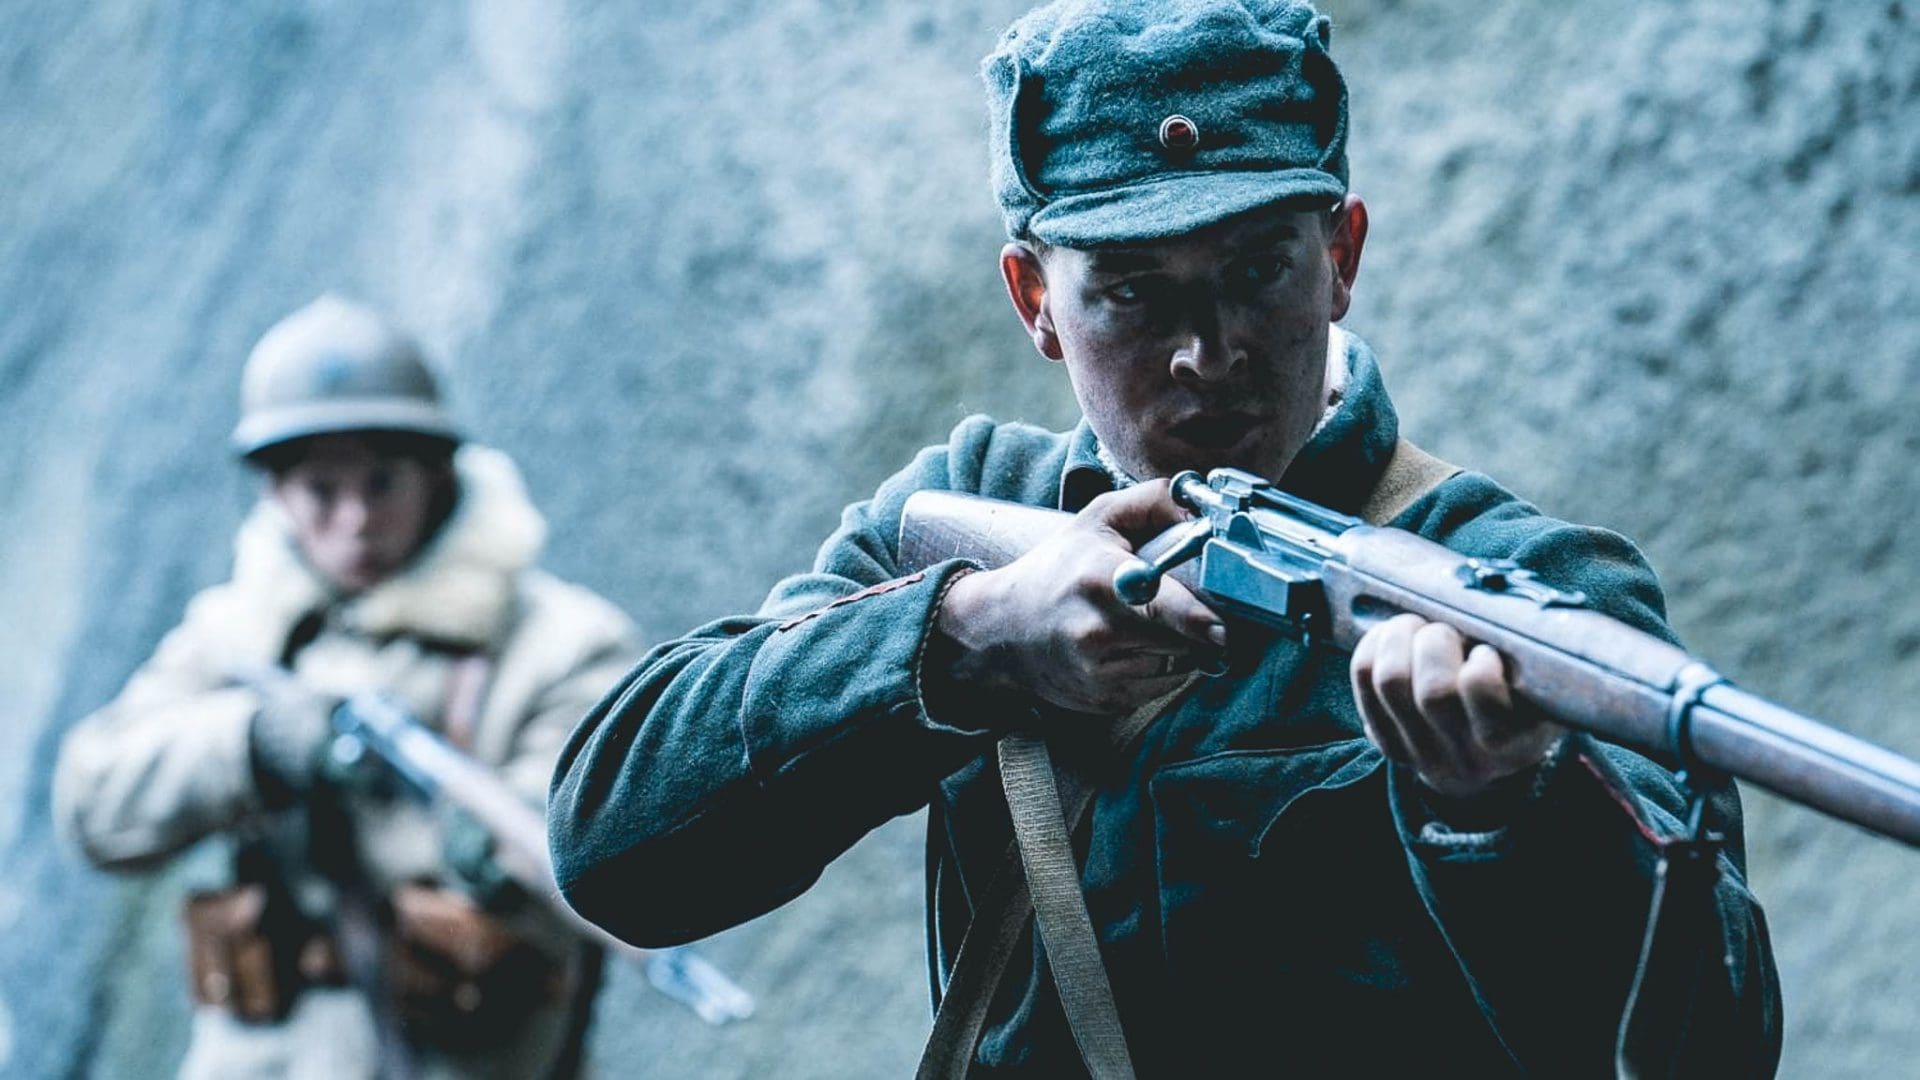 oorlogsfilm, Iedereen heeft het over deze <strong>waargebeurde, Noorse oorlogsfilm op Netflix</strong>